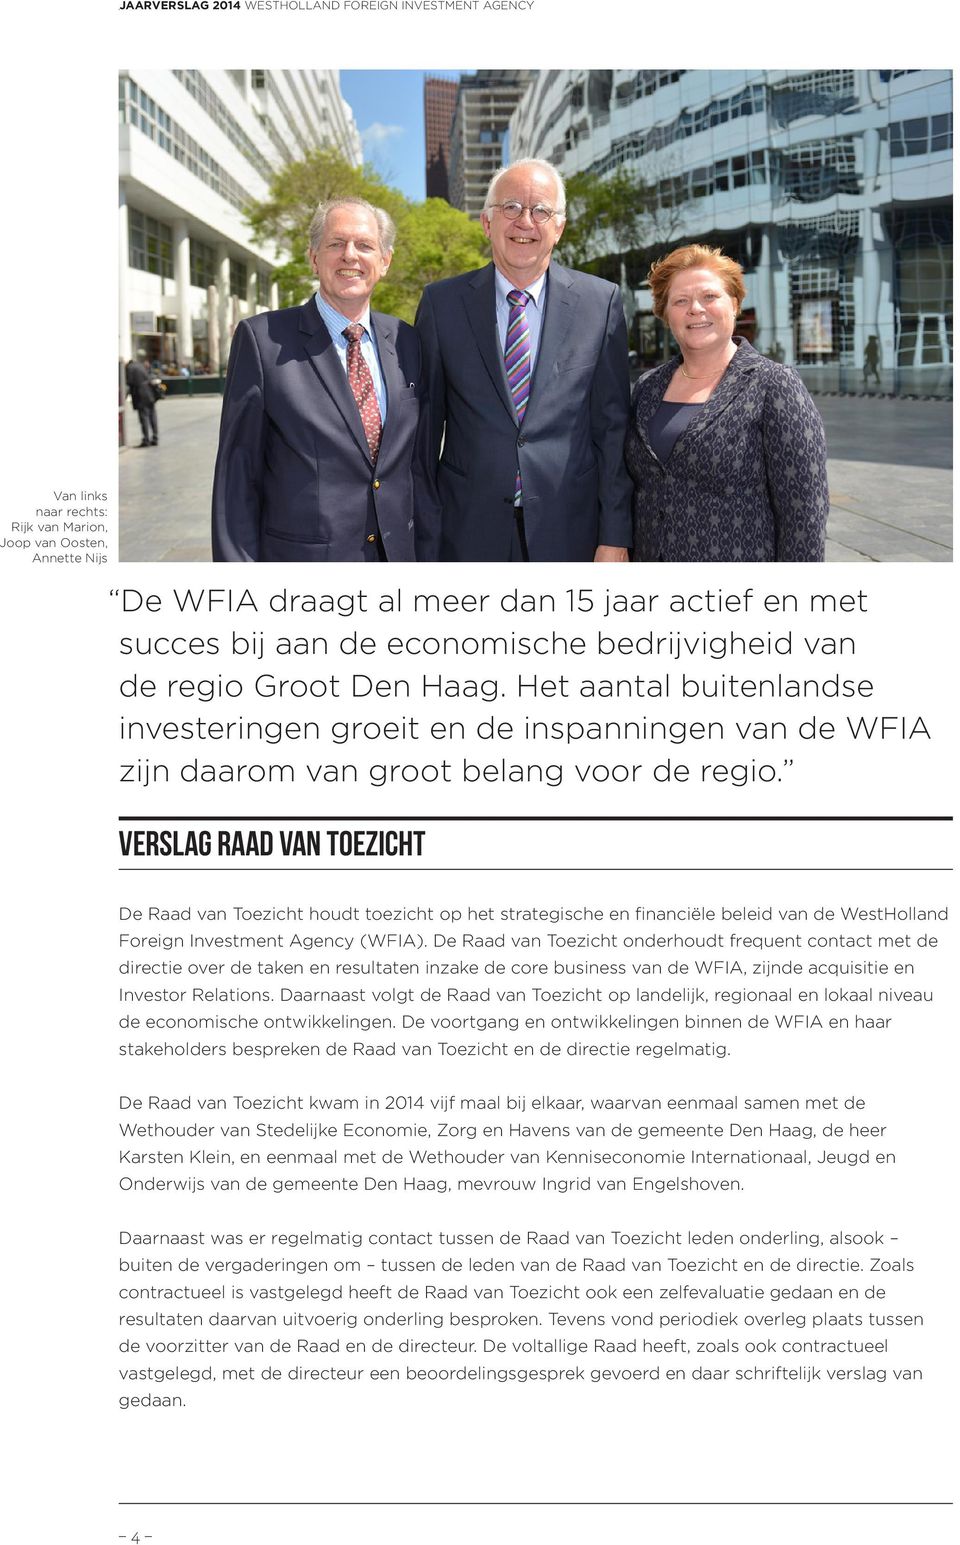 Verslag Raad van toezicht De Raad van Toezicht houdt toezicht op het strategische en financiële beleid van de WestHolland Foreign Investment Agency (WFIA).